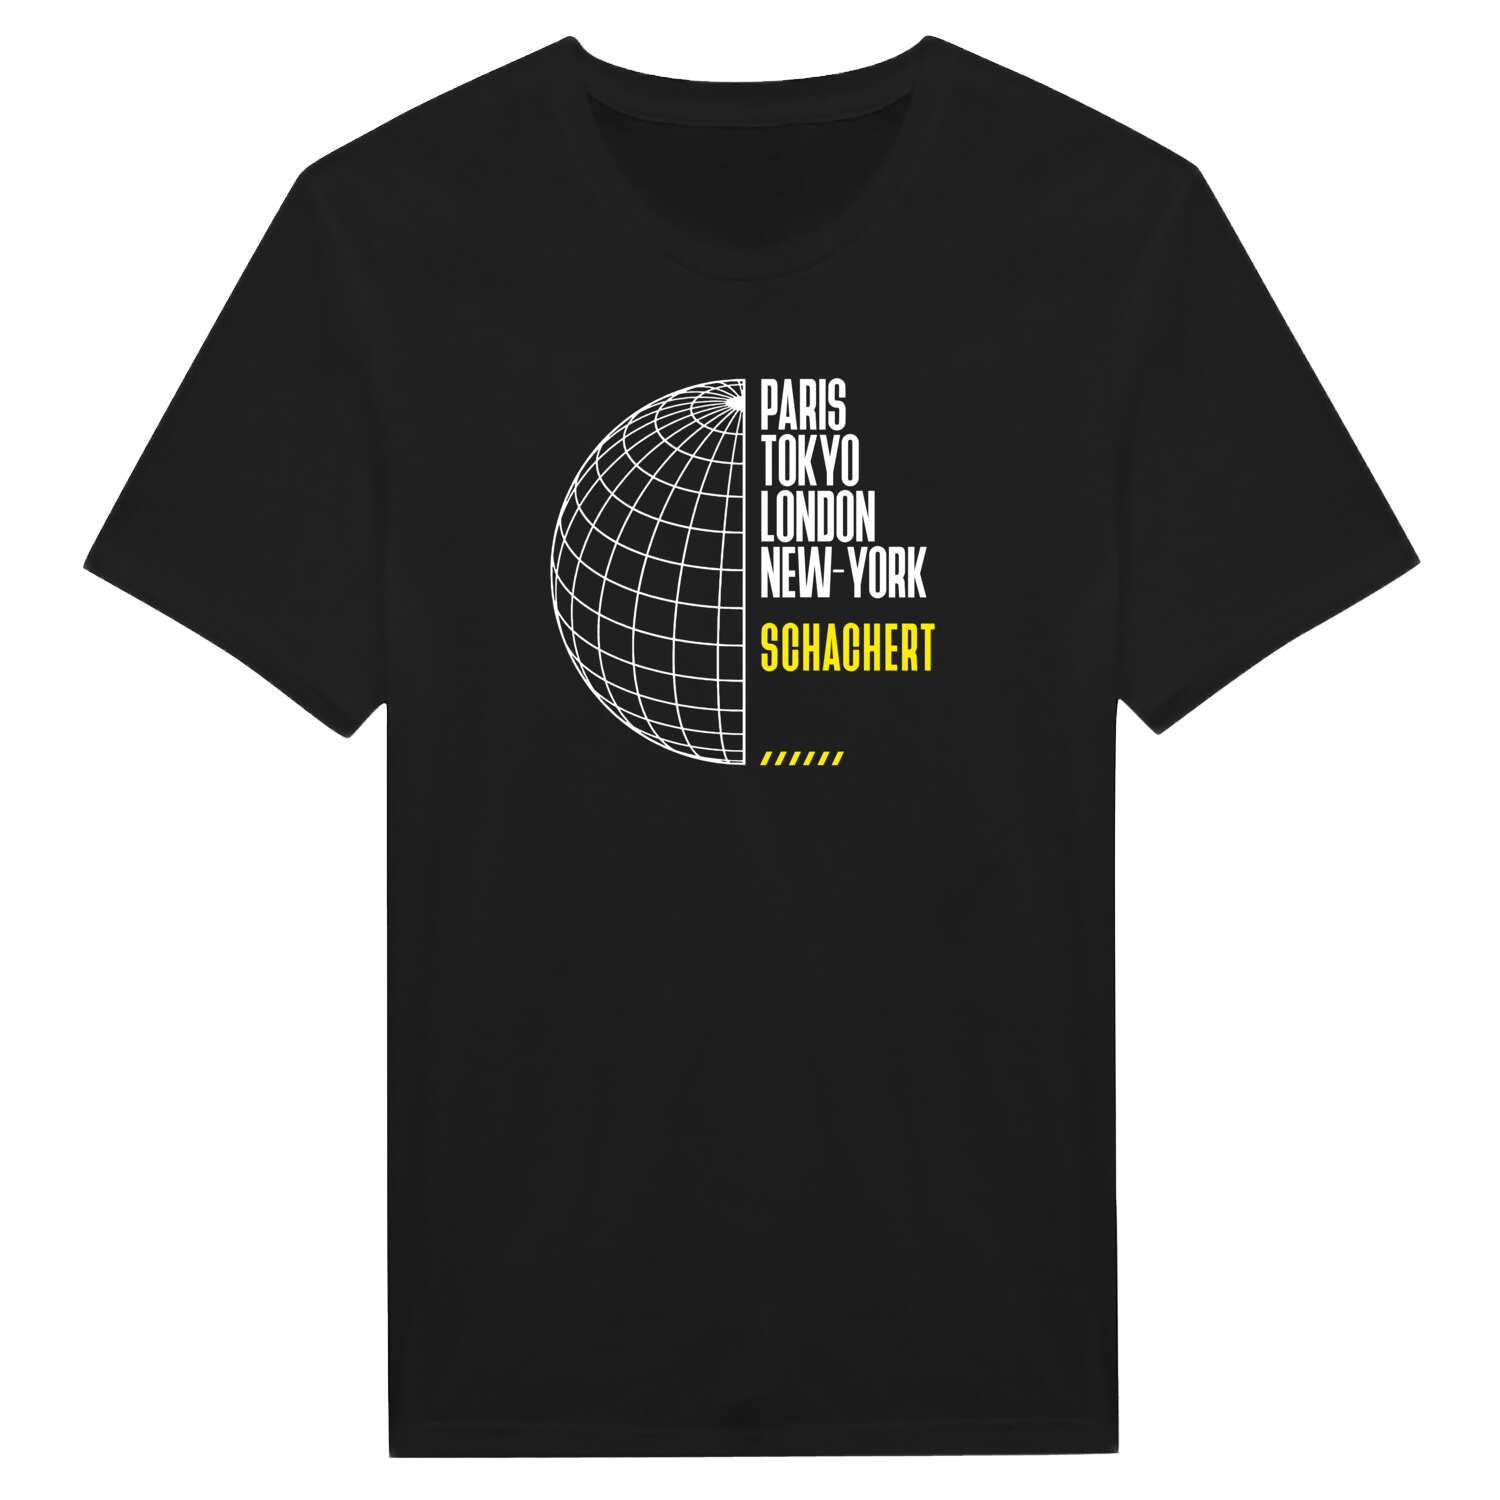 Schachert T-Shirt »Paris Tokyo London«